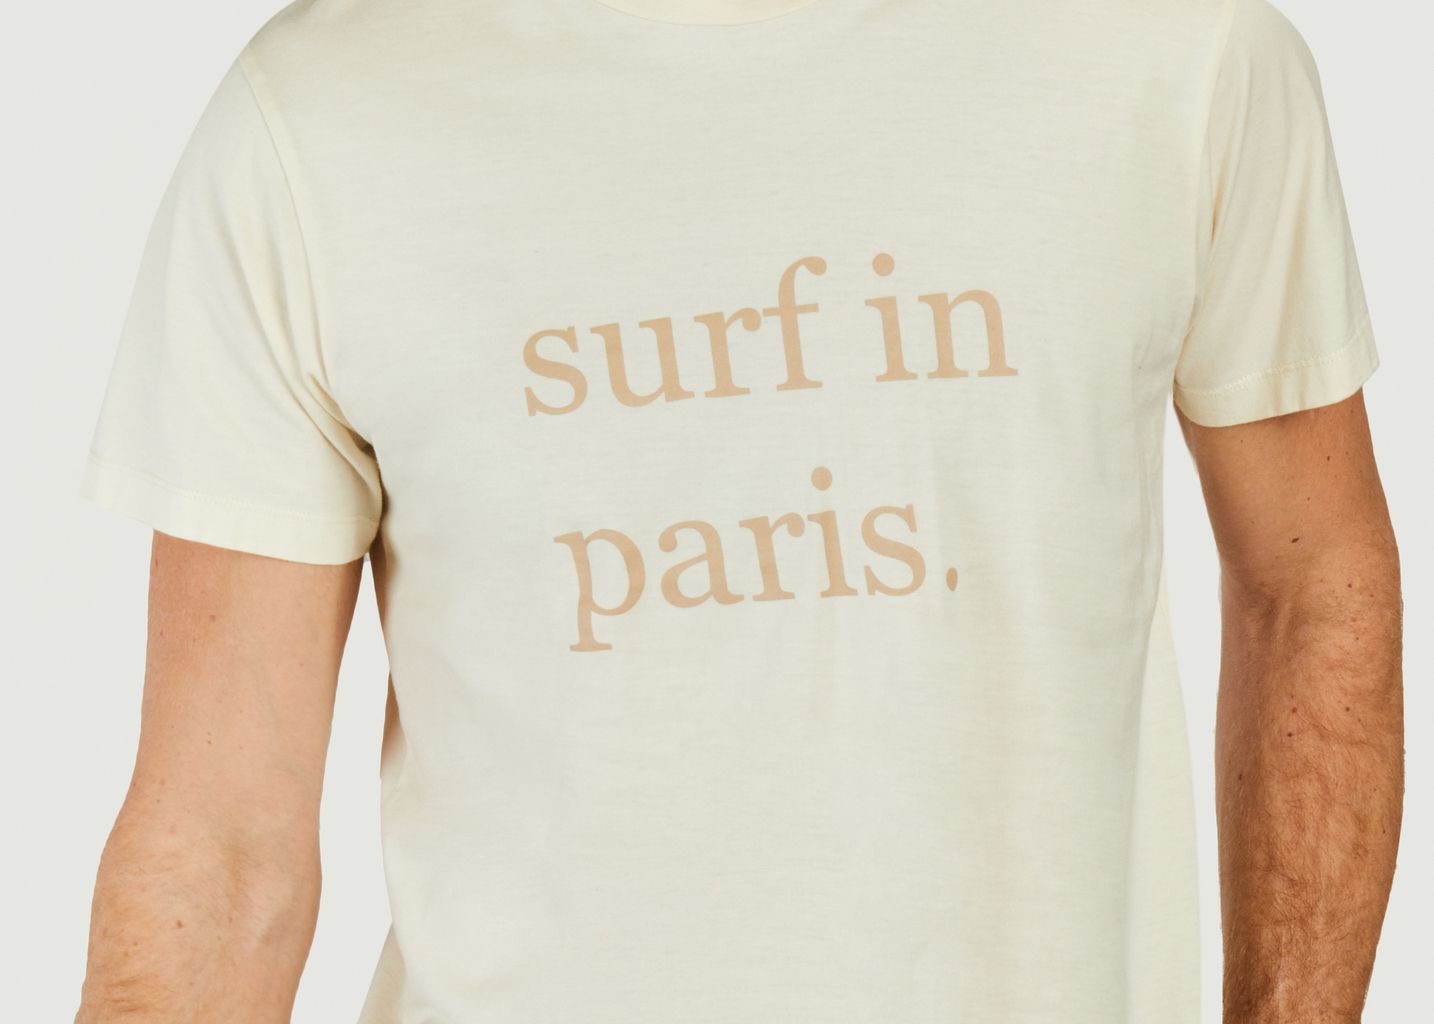 T-shirt Surf In Paris - Cuisse de Grenouille